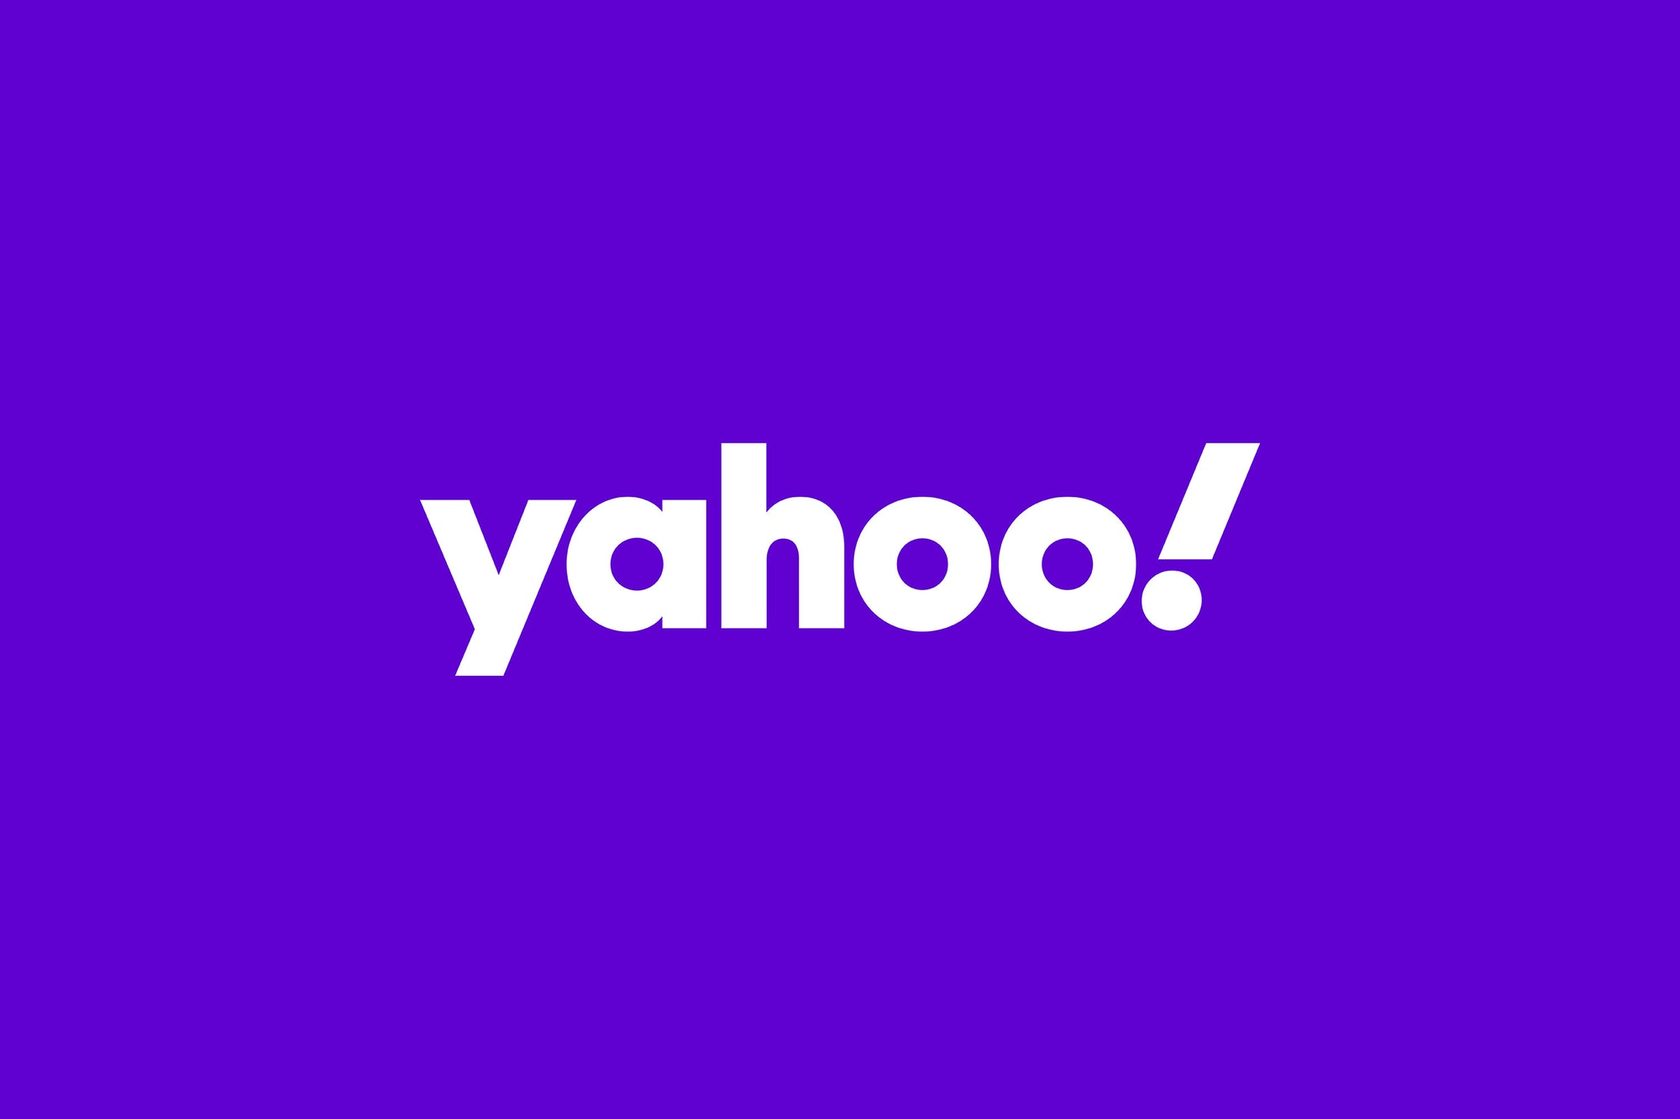 Обновление фирменного стиля и логотипа для поискового гиганта Yahoo!